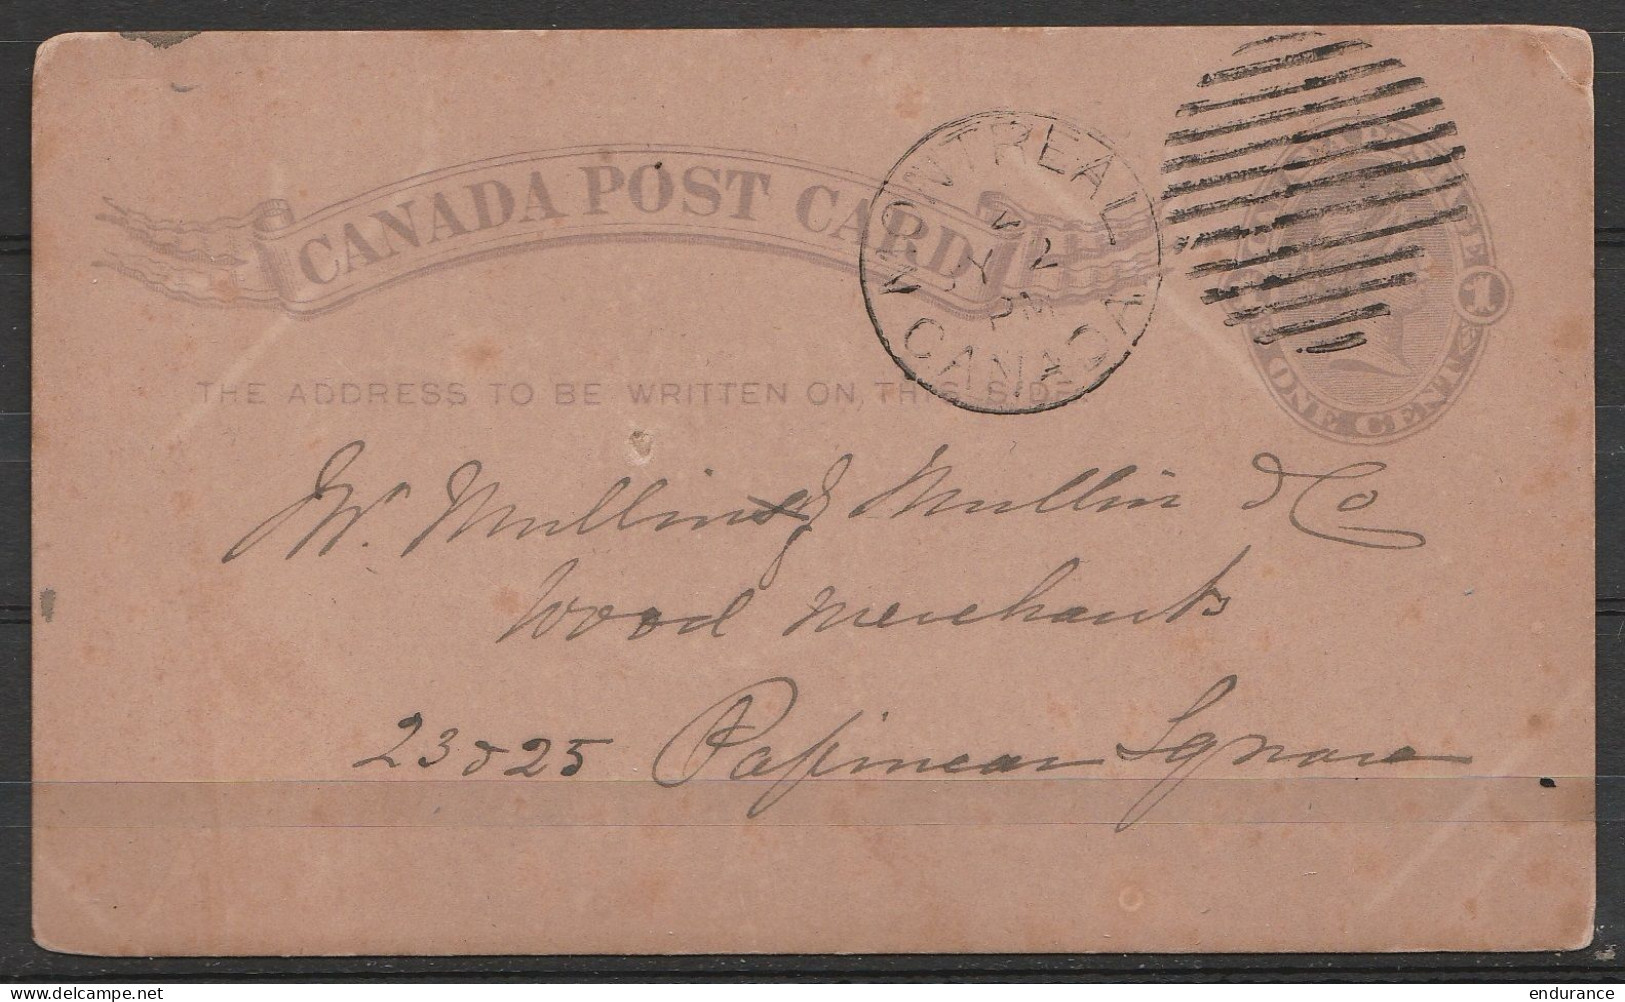 Canada Post Card 1c Càd MONTREAL /JY 2 1886 Pour PAPINEAU - 1860-1899 Regering Van Victoria